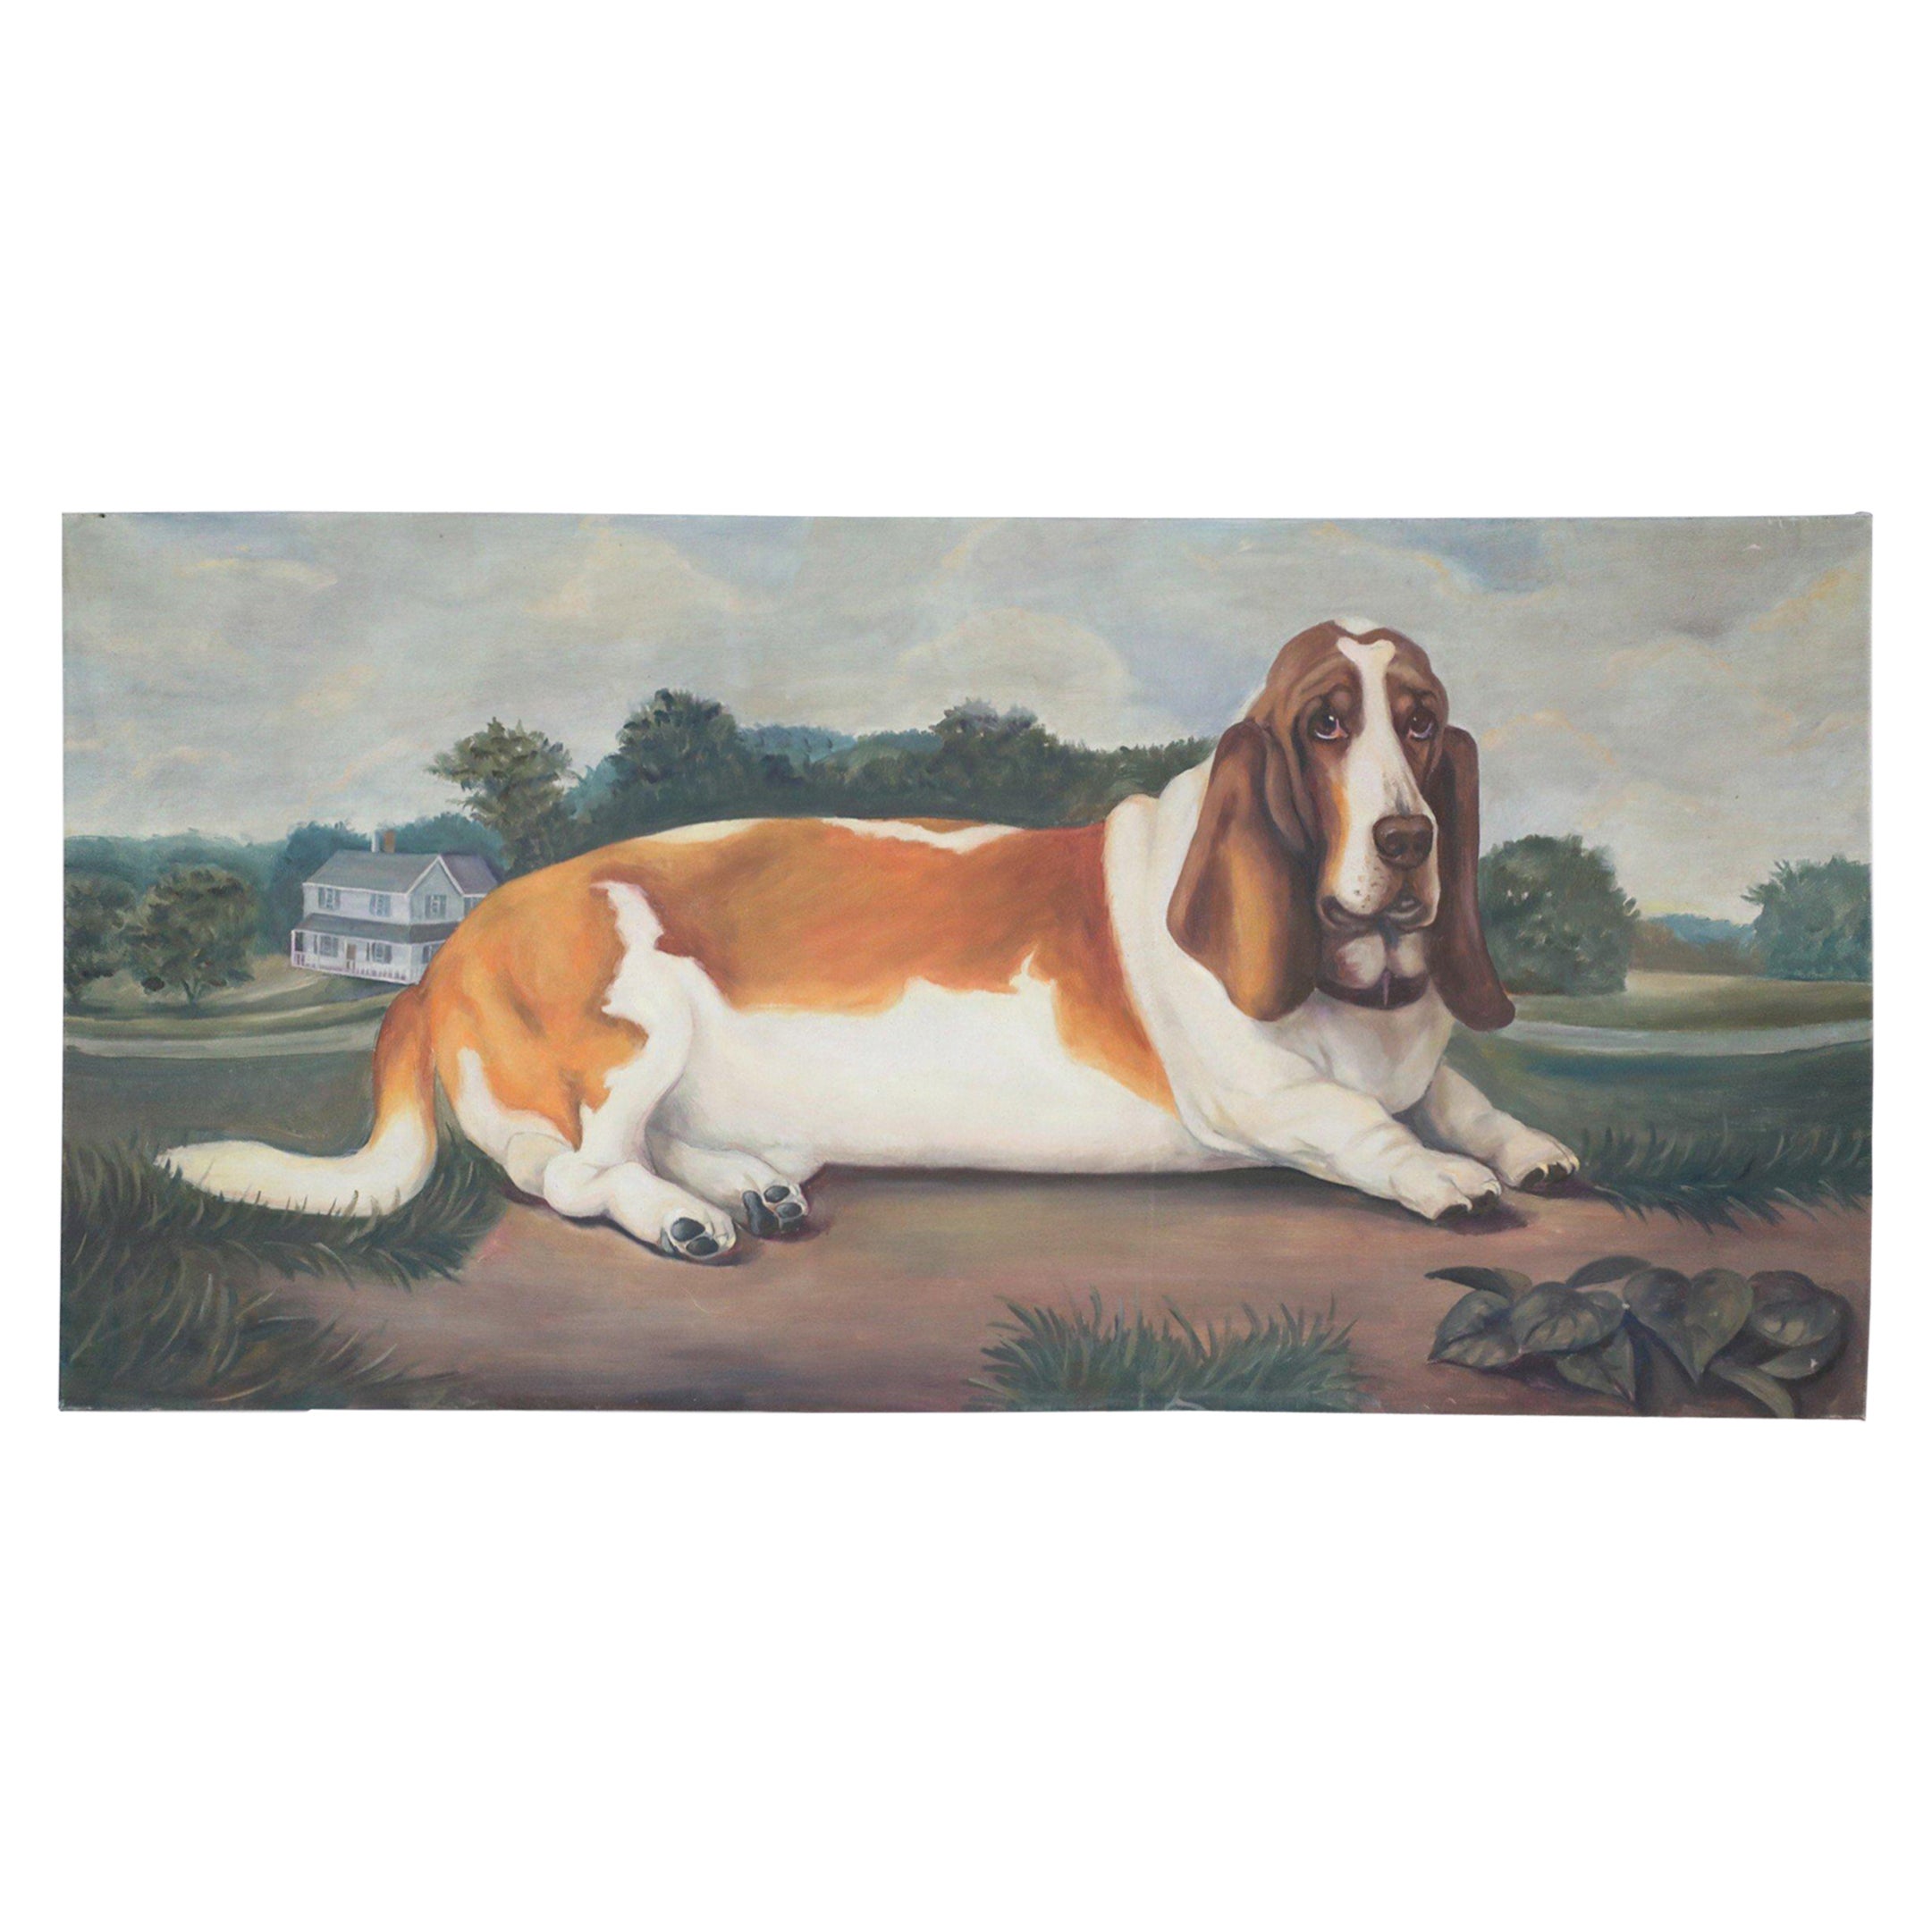 Porträt eines Basset-Hunds in Natur, Gemälde auf Leinwand